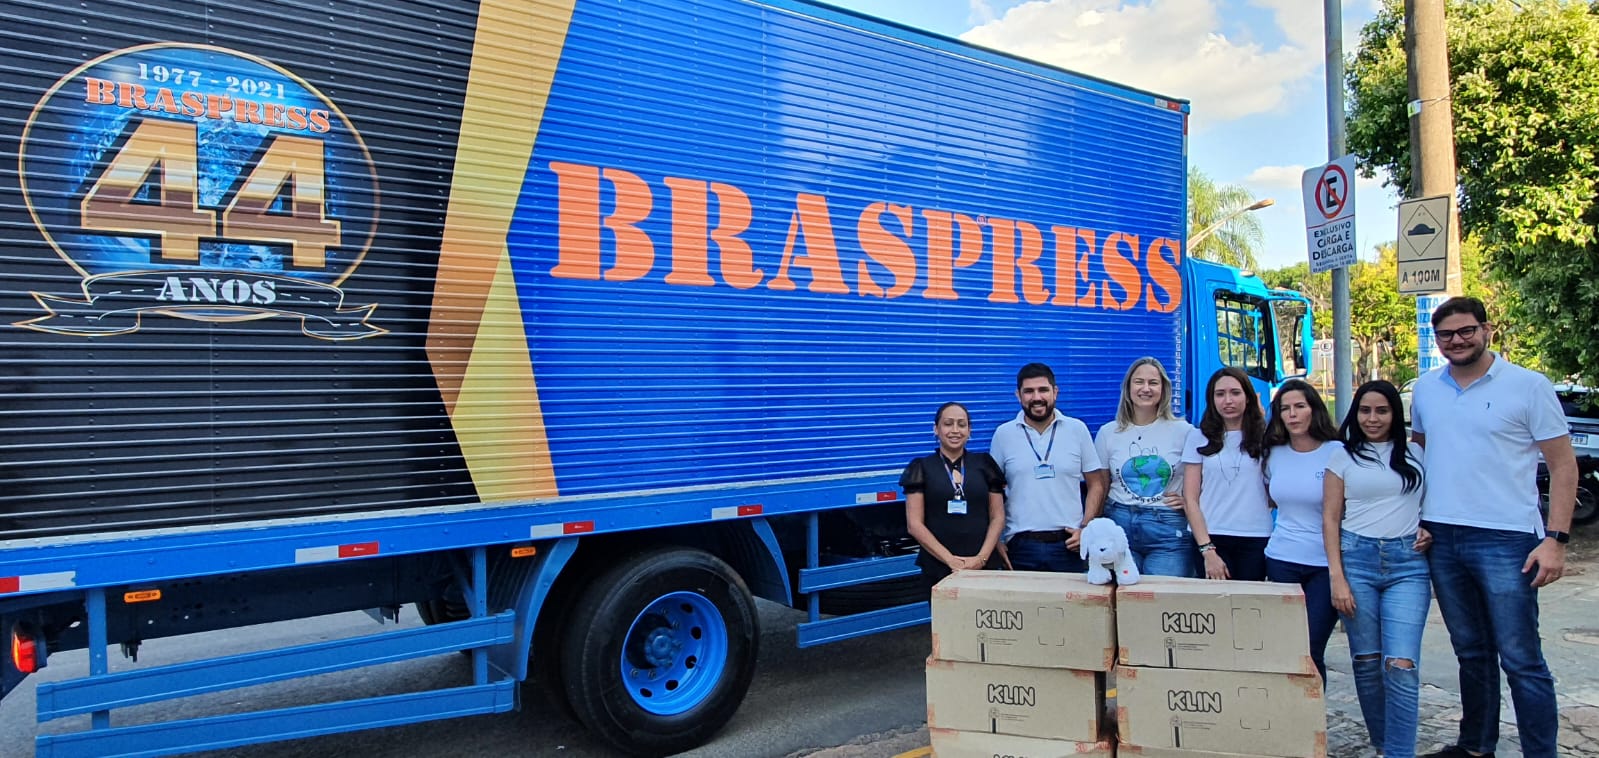 Braspress transporta doações para a Ucrânia